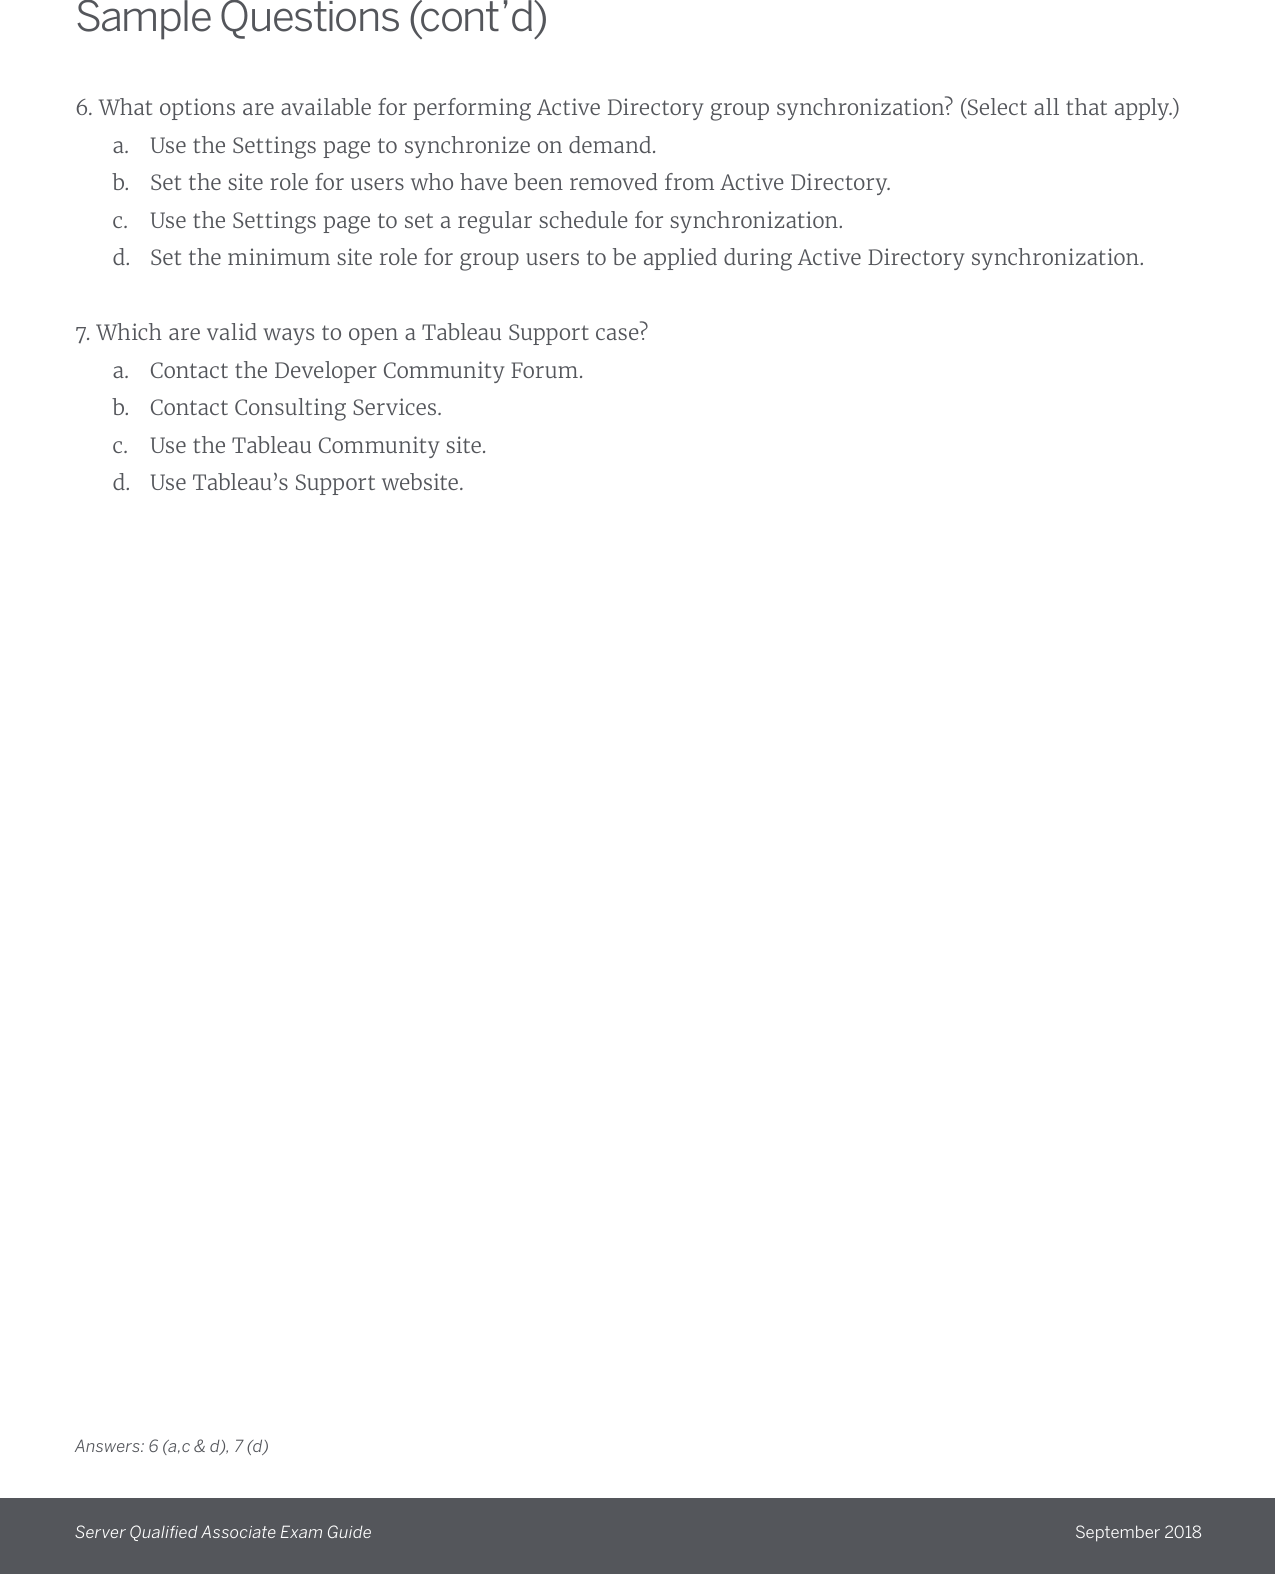 Page 7 of 7 - Server QA Exam Guide